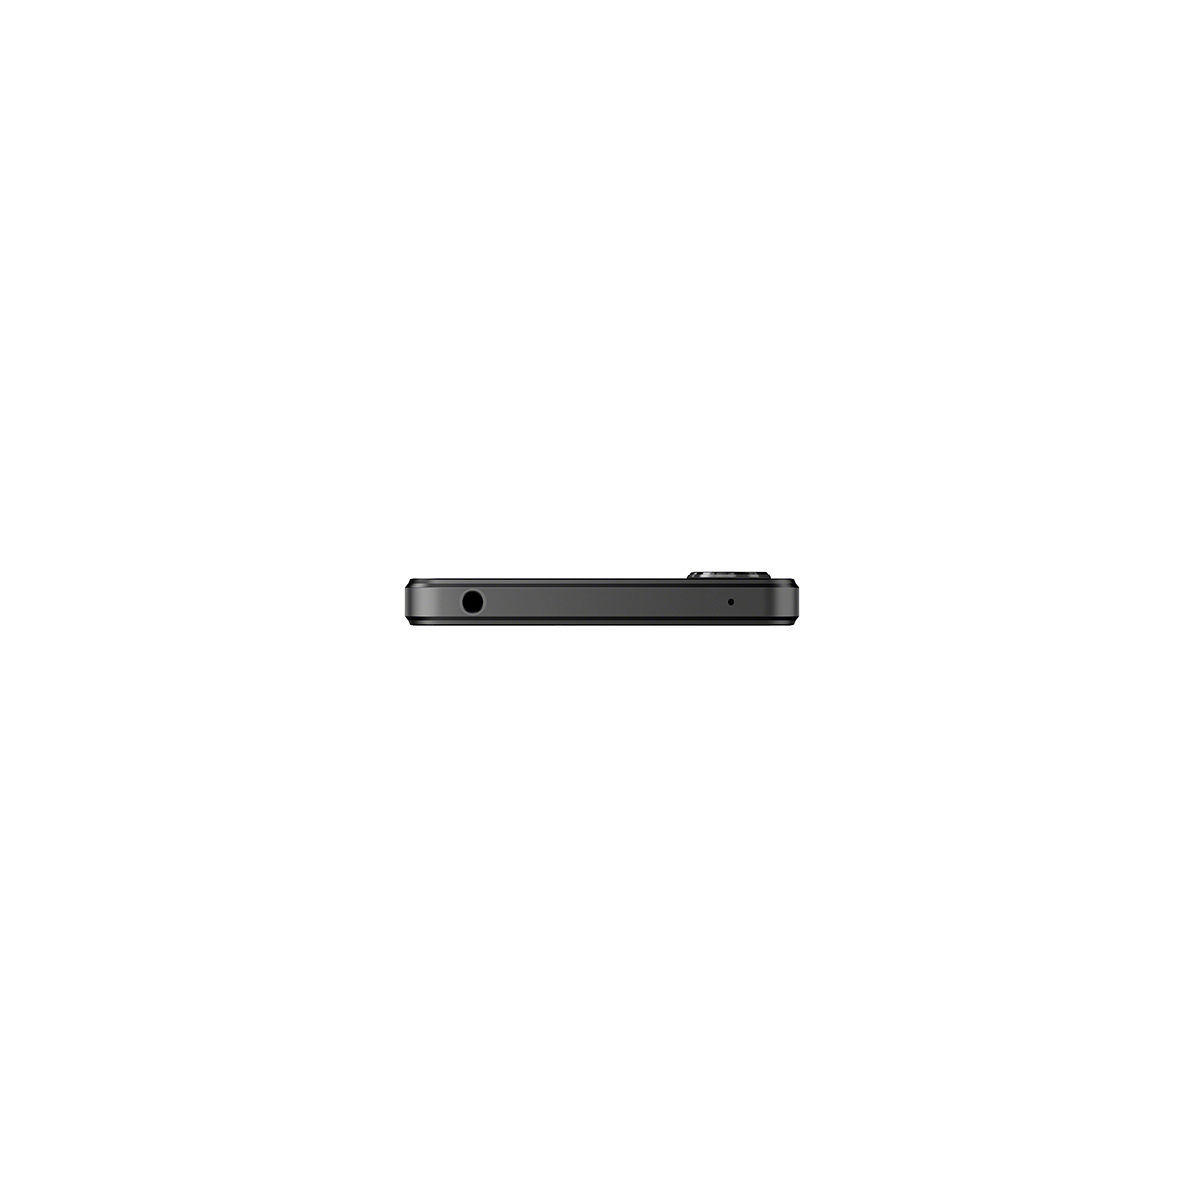 Sony Xperia 1 IV 5G schwarz 256 GB